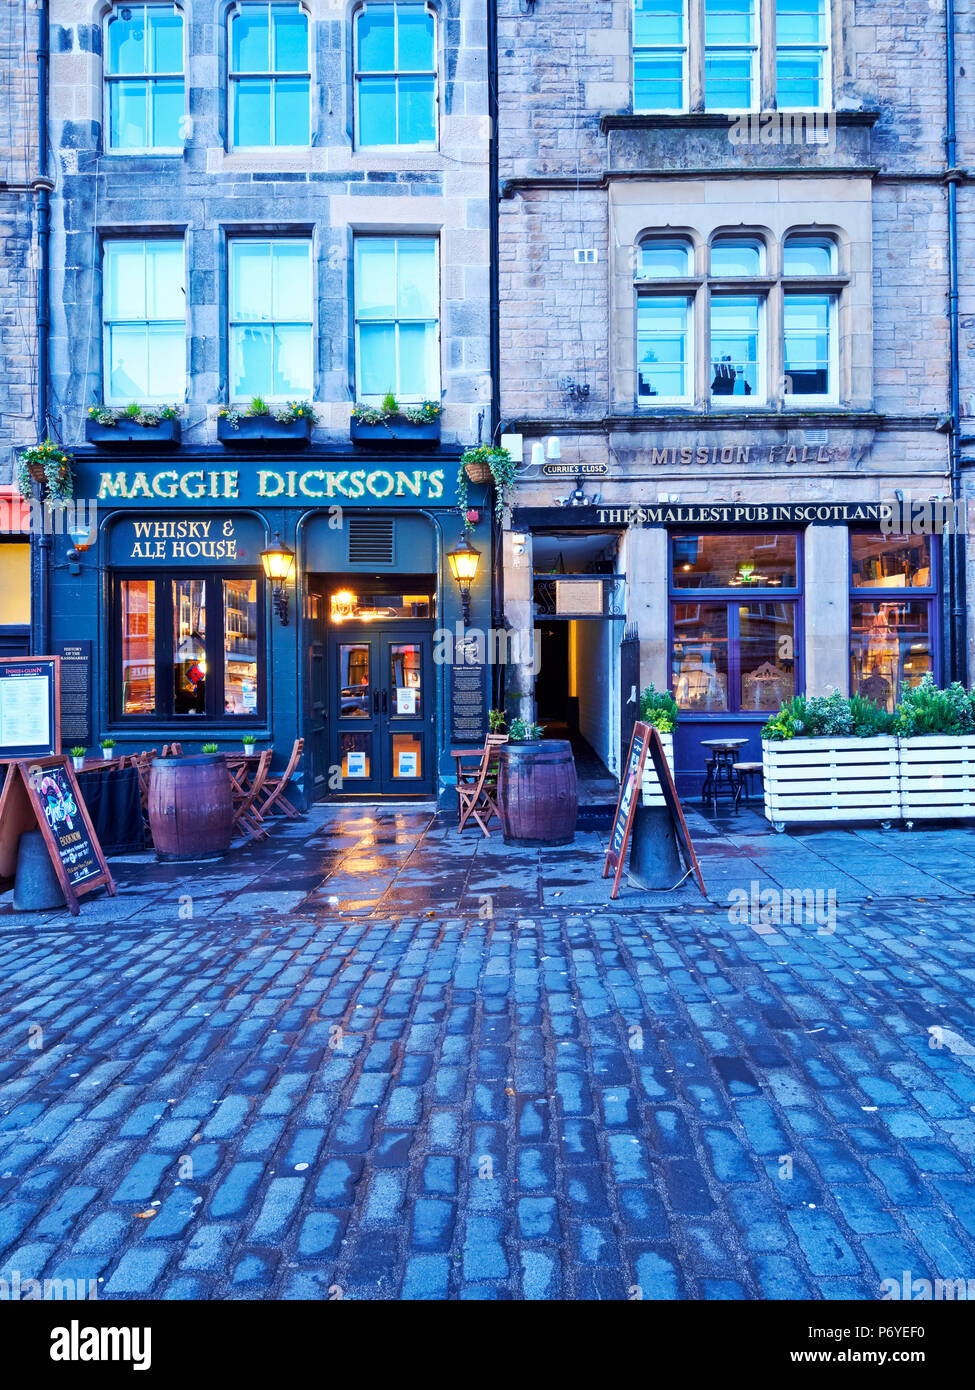 Regno Unito, Scozia, Lothian, Edimburgo, Grassmarket Square, crepuscolo vista del Maggie Dickson's e il più piccolo pub in Scozia. Foto Stock